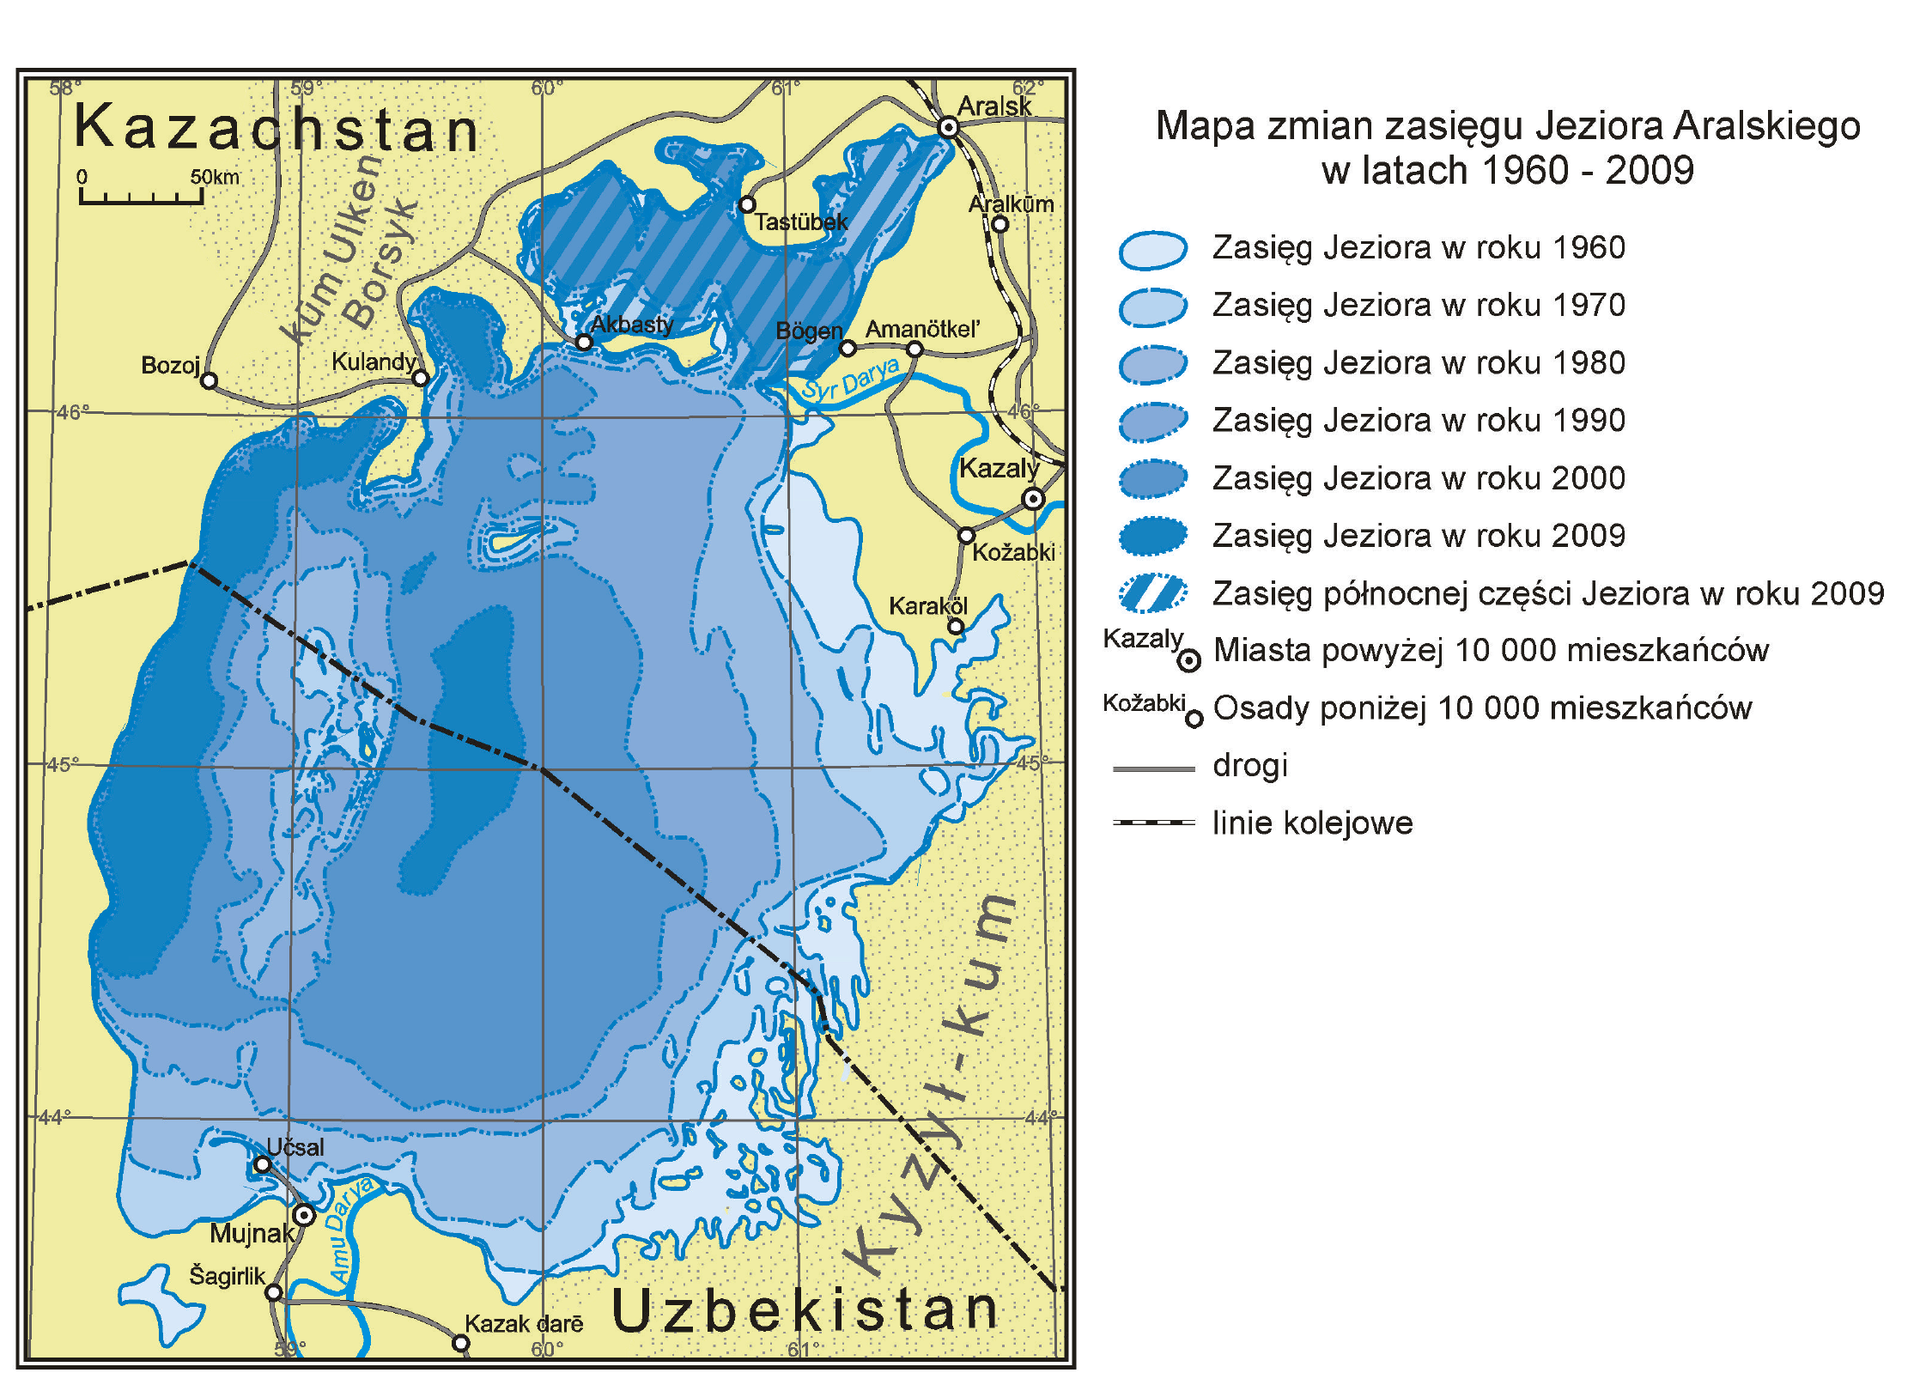 Mapa dotyczy zmian zasięgu Jeziora Aralskiego w latach 1960-2009. Jezioro Aralskie jest położone na obszarze Uzbekistanu i Kazachstanu. Jezioro na południowym wschodzie graniczy z pustynią Kyzył-kum. Przez środek jeziora biegnie linia kolejowa. Na mapie pokazano, jak znacząco zmienił się zasięg jeziora. W latach 60. powierzchnia jeziora była duża, zbliżona kształtem do koła. W kolejnych dziesięcioleciach jezioro wysychało. W roku 2009 jezioro zajmowało wąski pas na zachodzie dawnego obszaru akwenu, w niewielkiej centralnej części oraz w północnej. 